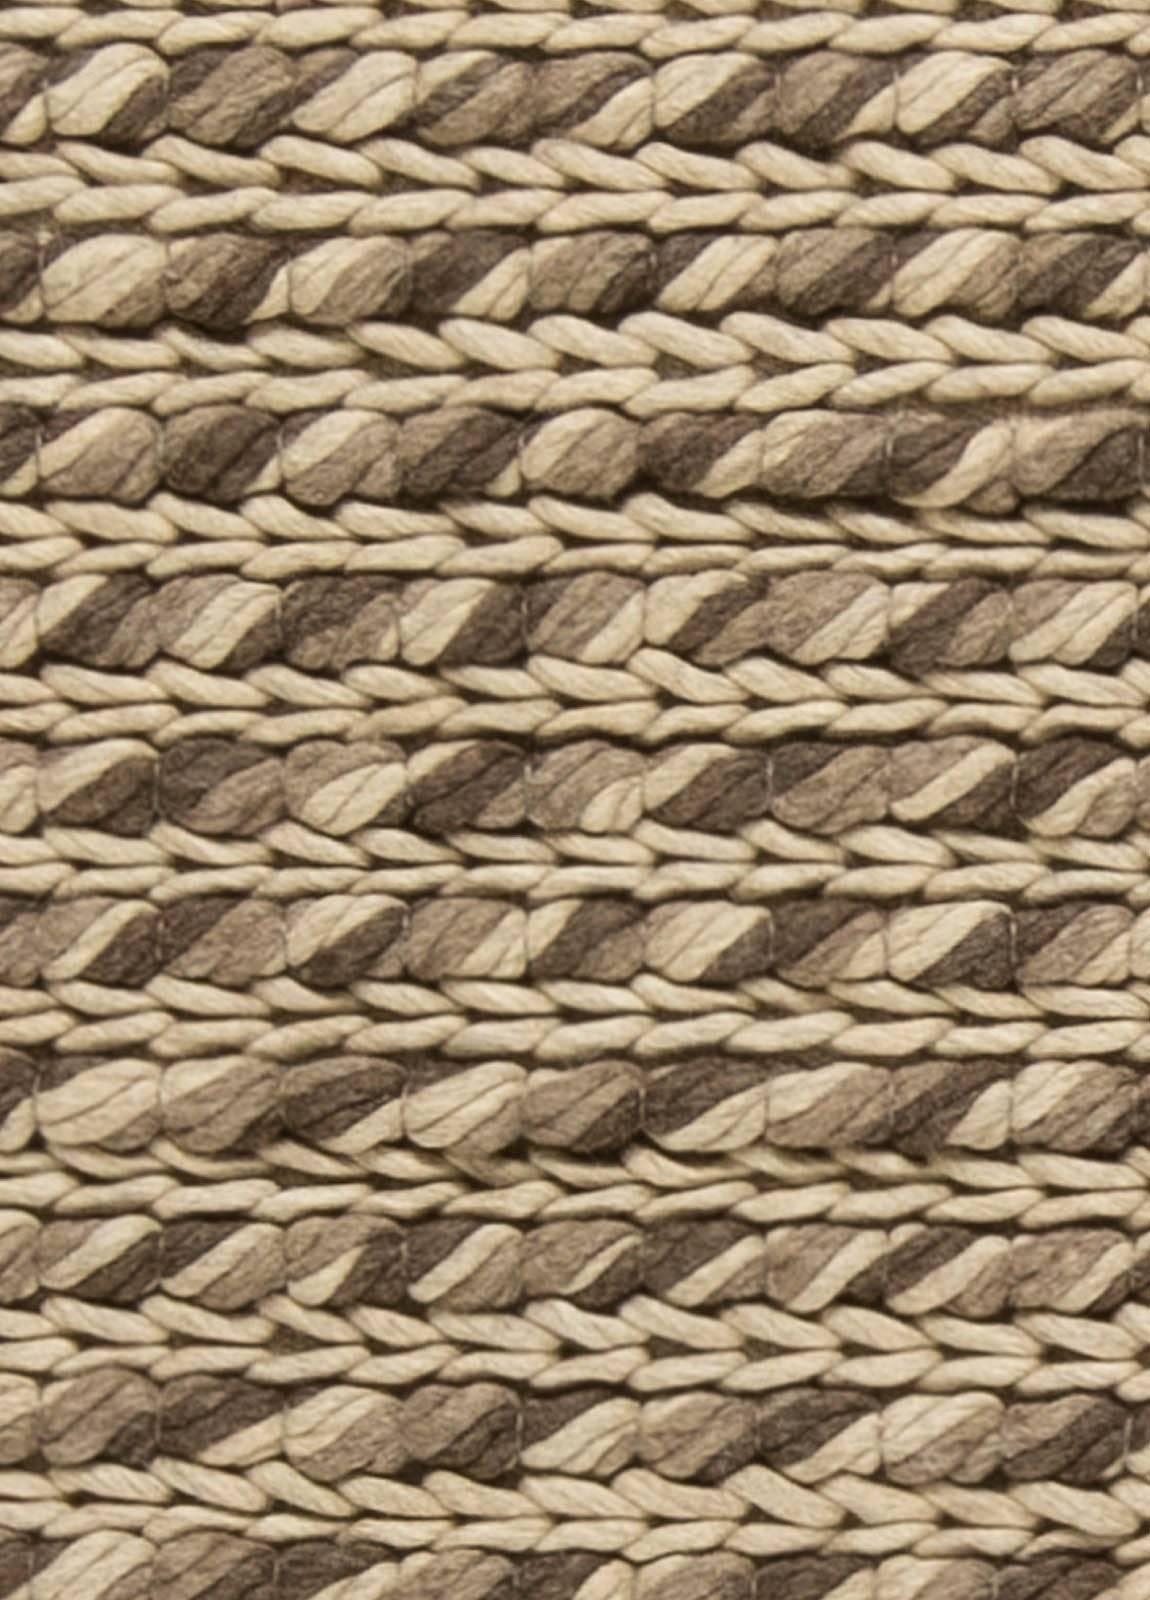 Modern striped beige Sylvan handmade wool rug by Doris Leslie Blau 
Size: 4'9